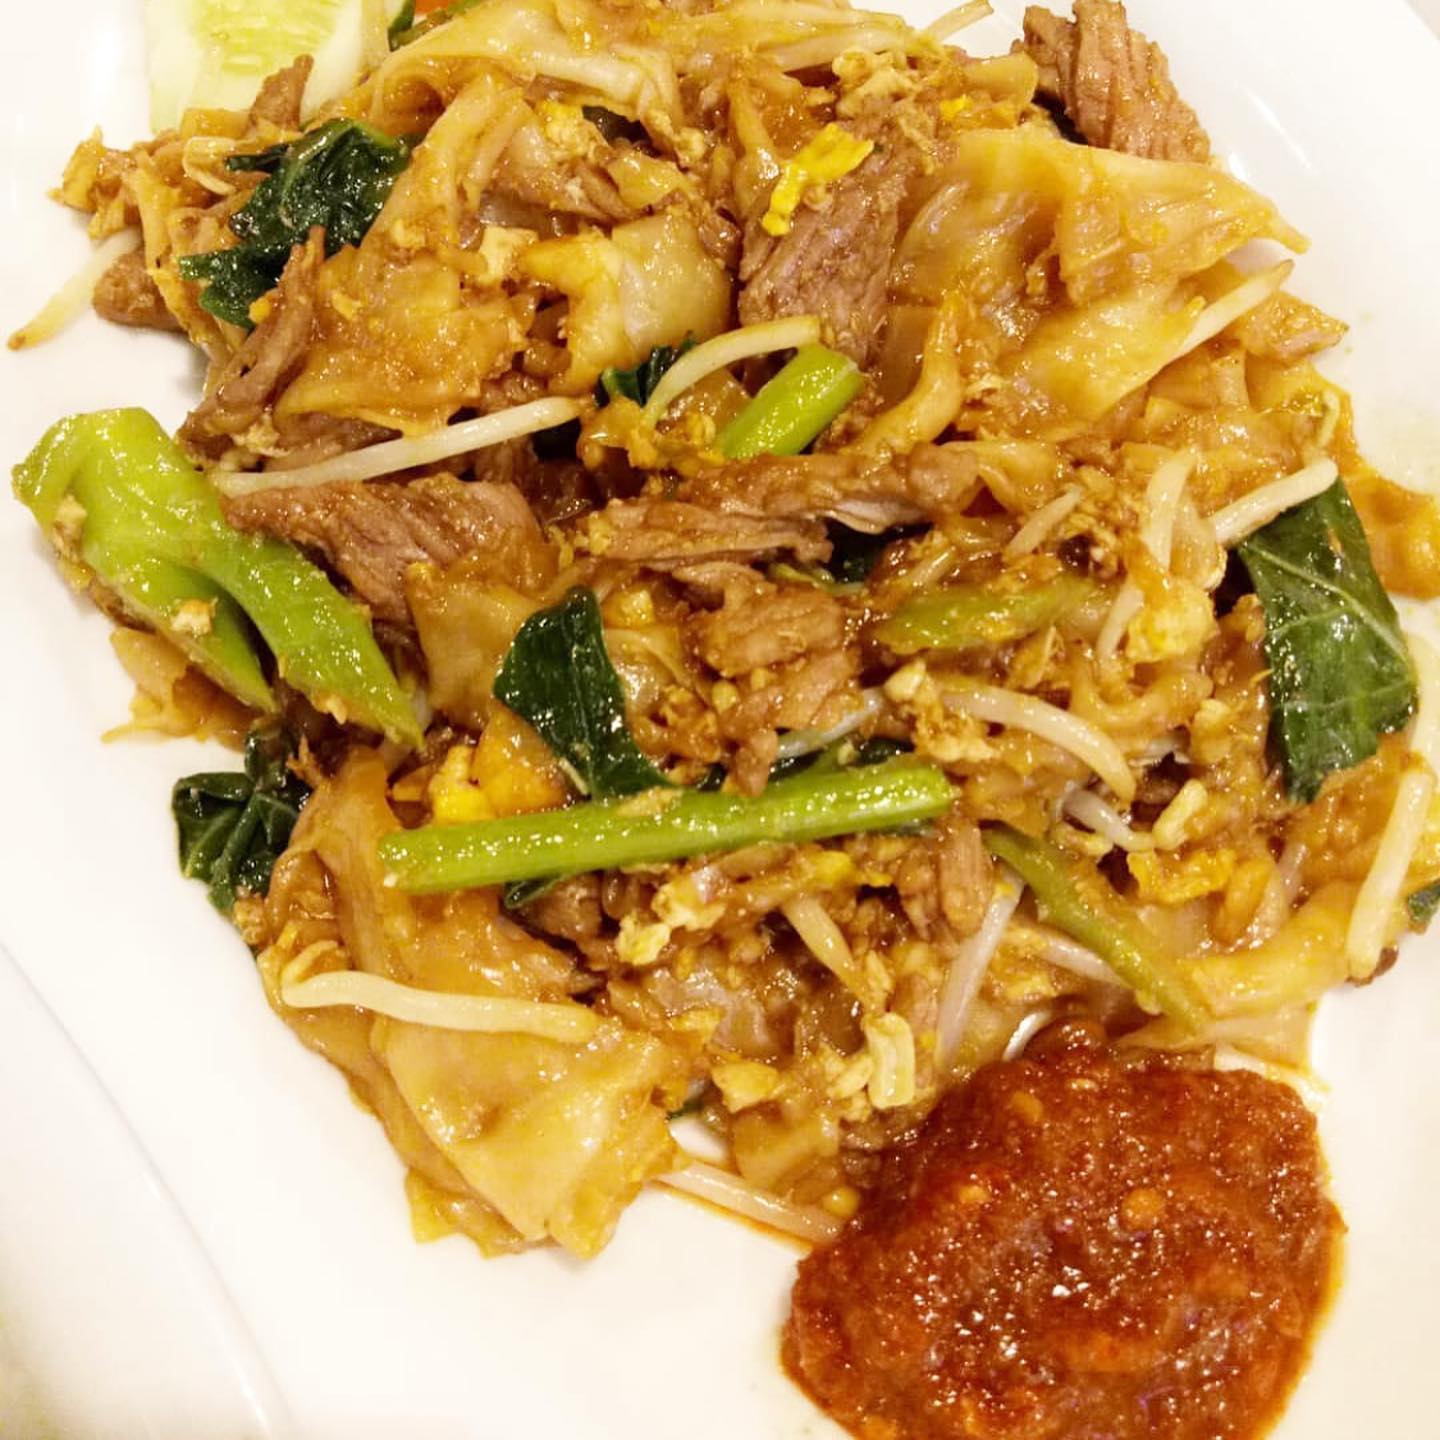 Phad See-ew, kwetiao goreng khas Thailand ini memang beda dengan yang lain. Wajib dicoba.
Terima kasih atas review anda @mimi_wonderfood 🥰 kop khun kah mak mak